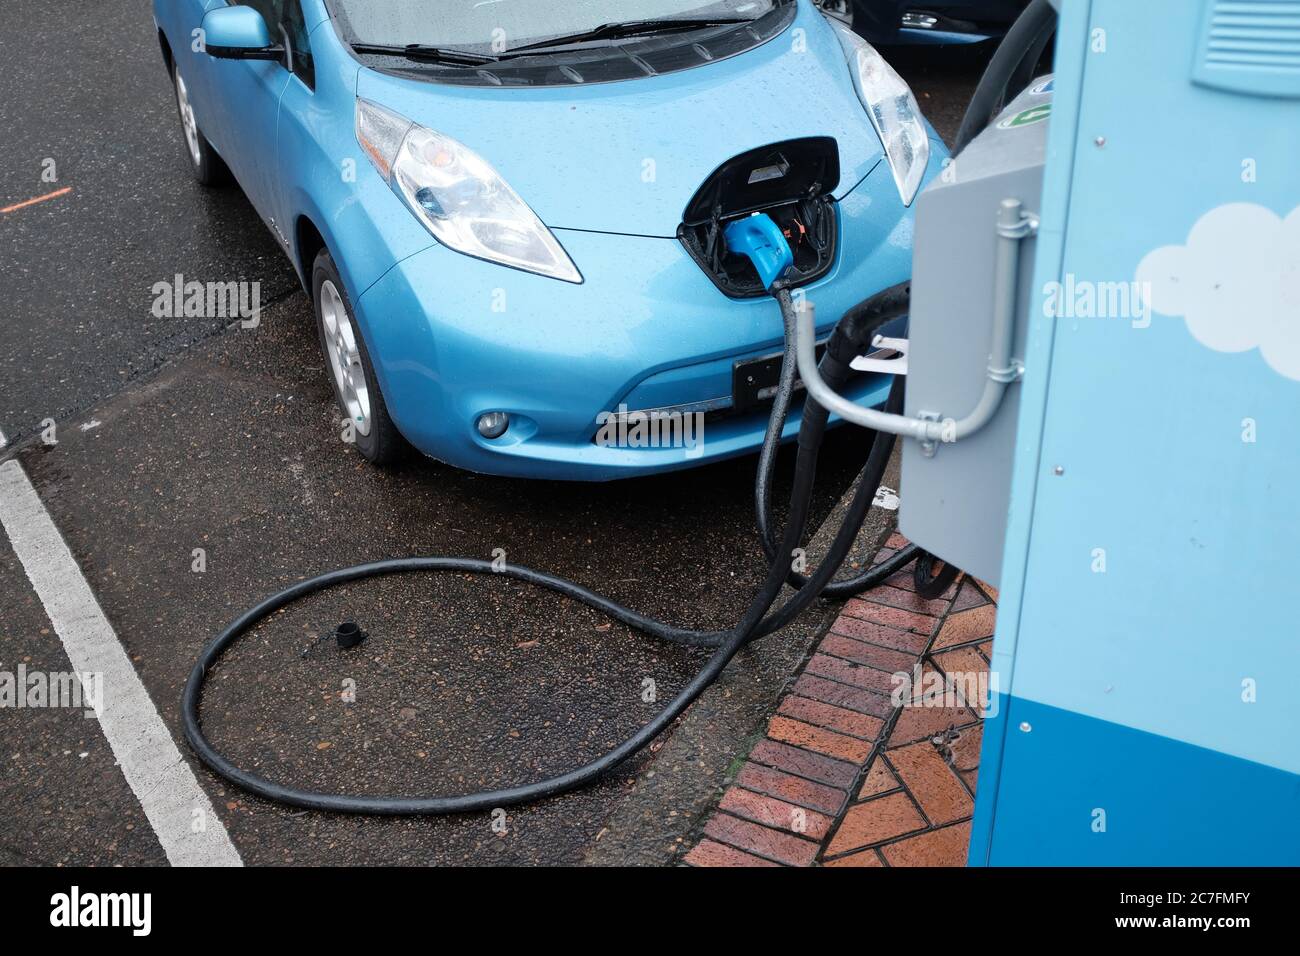 PORTLAND, ÉTATS-UNIS - 20 décembre 2019 : une voiture bleue fraîche qui se recharge pour être prête à partir Banque D'Images